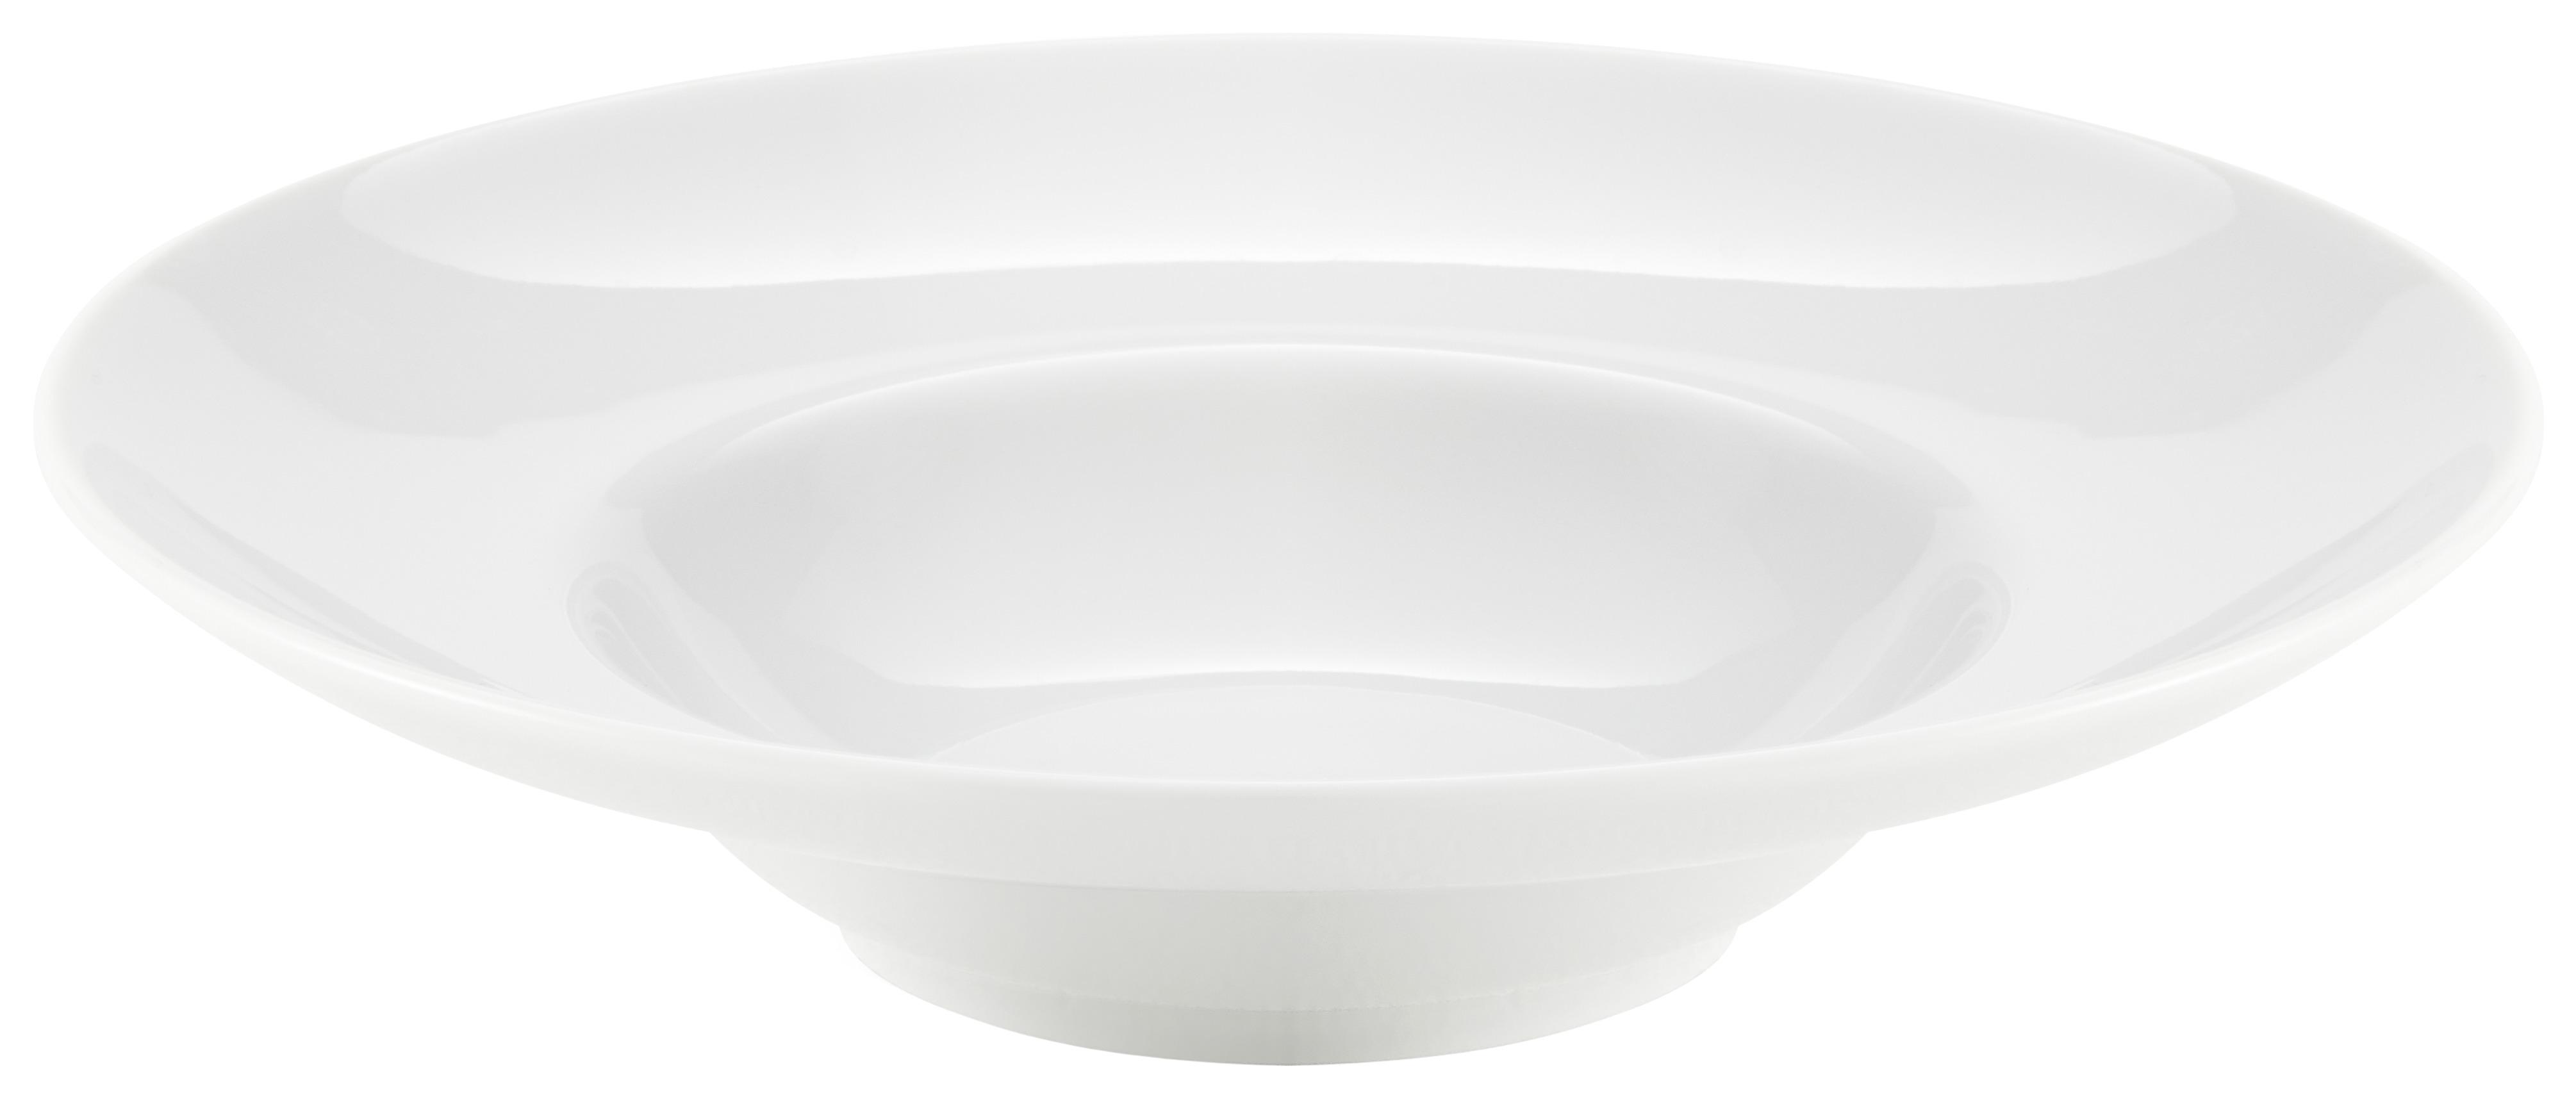 Pastateller Porzellan Weiß Jackie ca. 23,5 cm - Weiß, KONVENTIONELL, Keramik (22176cm) - Luca Bessoni